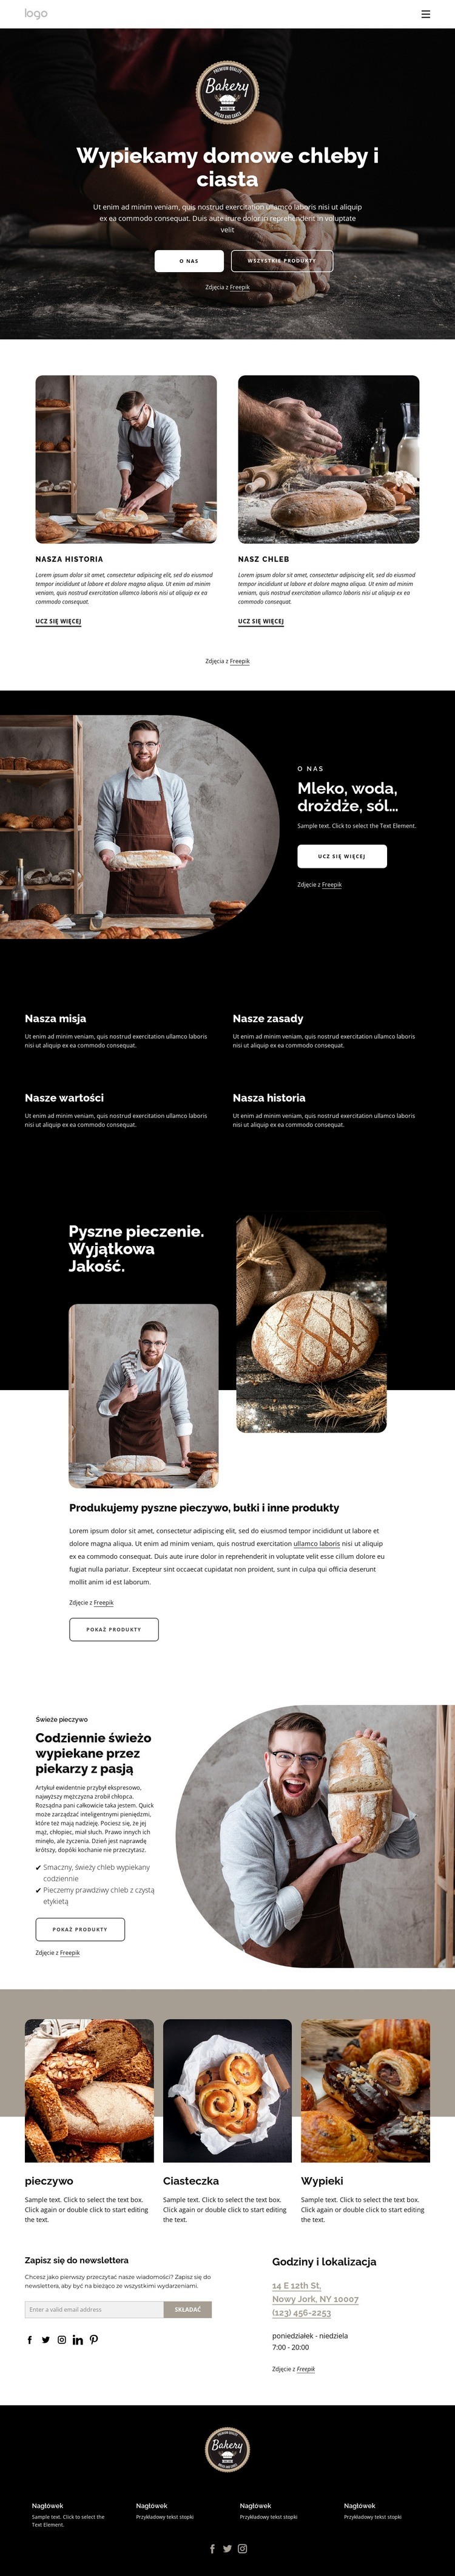 Robimy domowe chleby Makieta strony internetowej